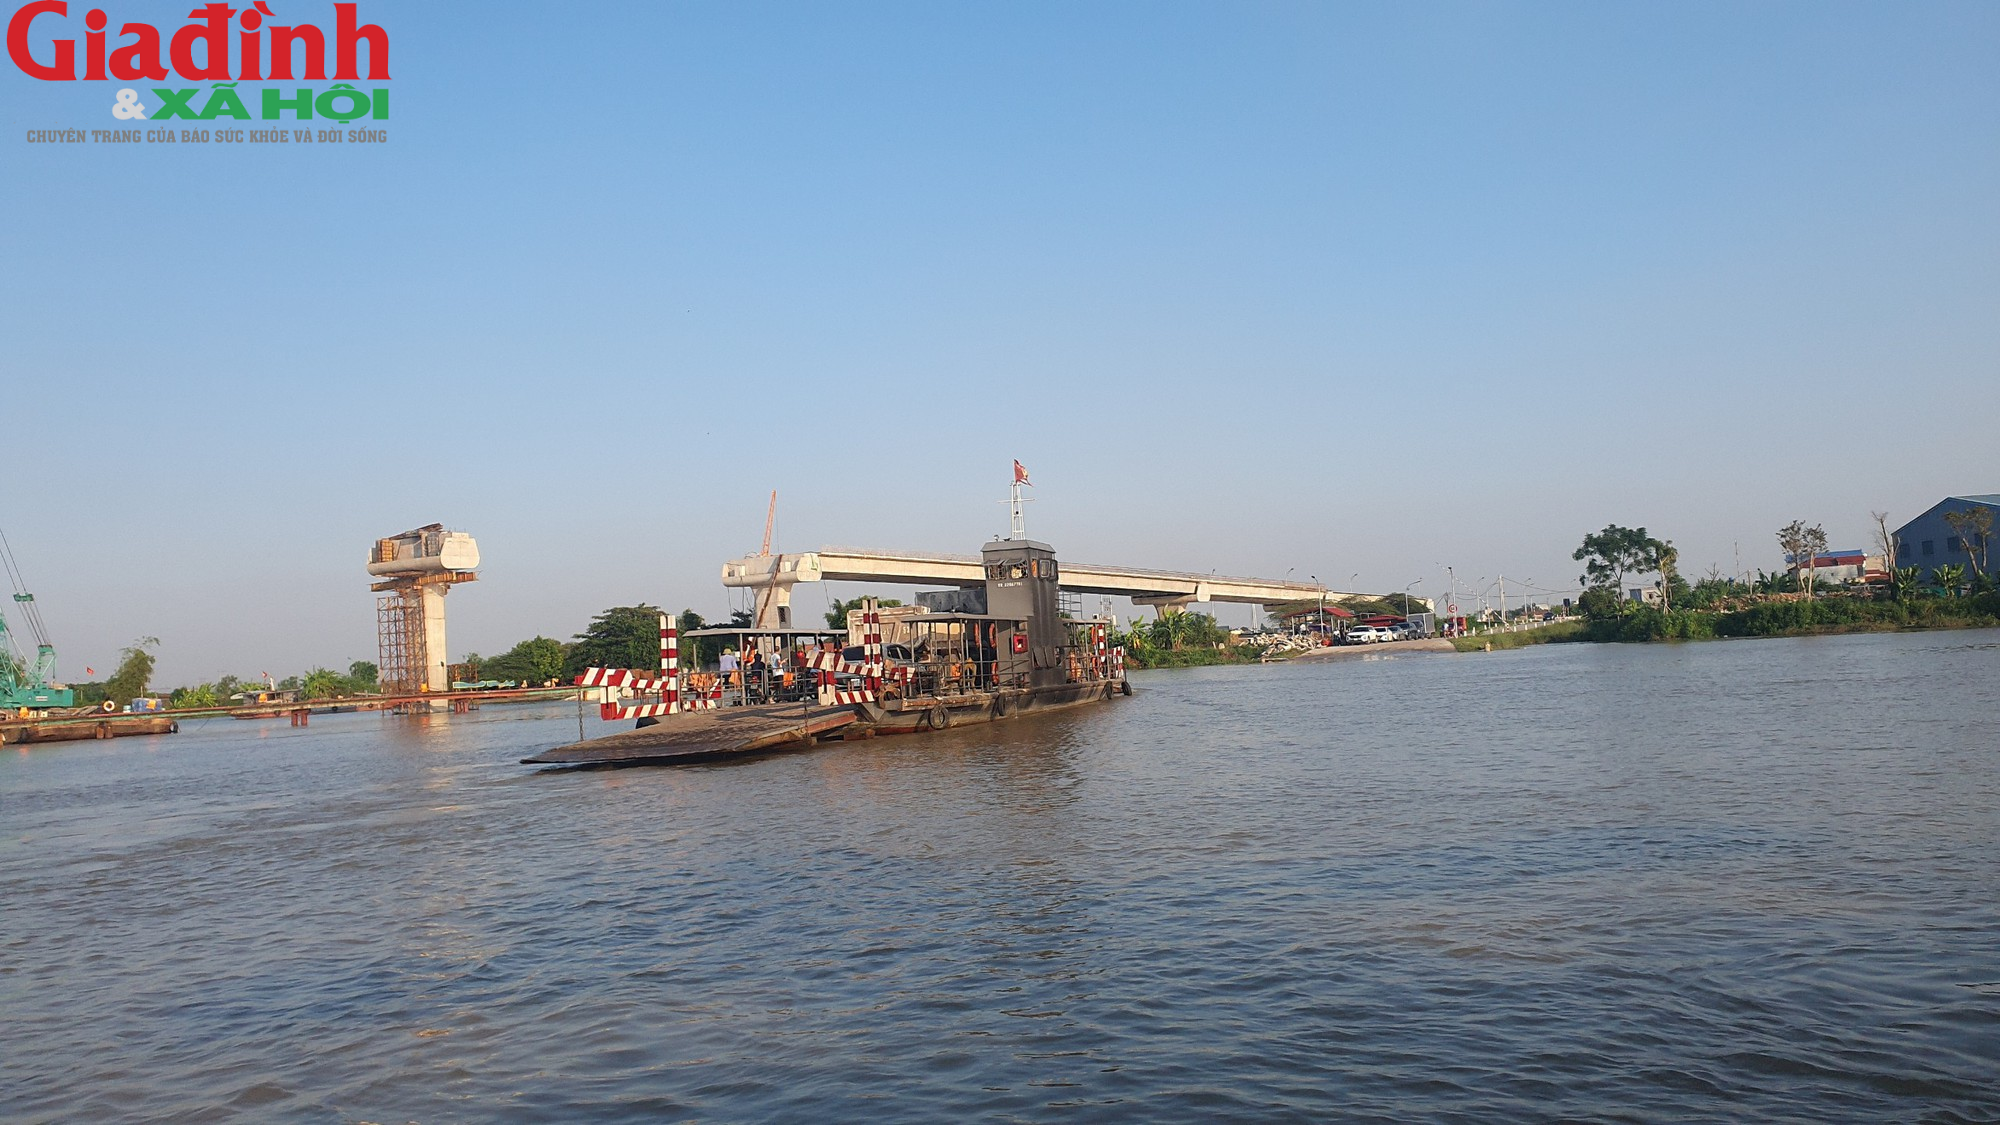 Cận cảnh đại công trình xây dựng cầu Đồng Cao (Nam Định) giữa sông lớn - Ảnh 12.